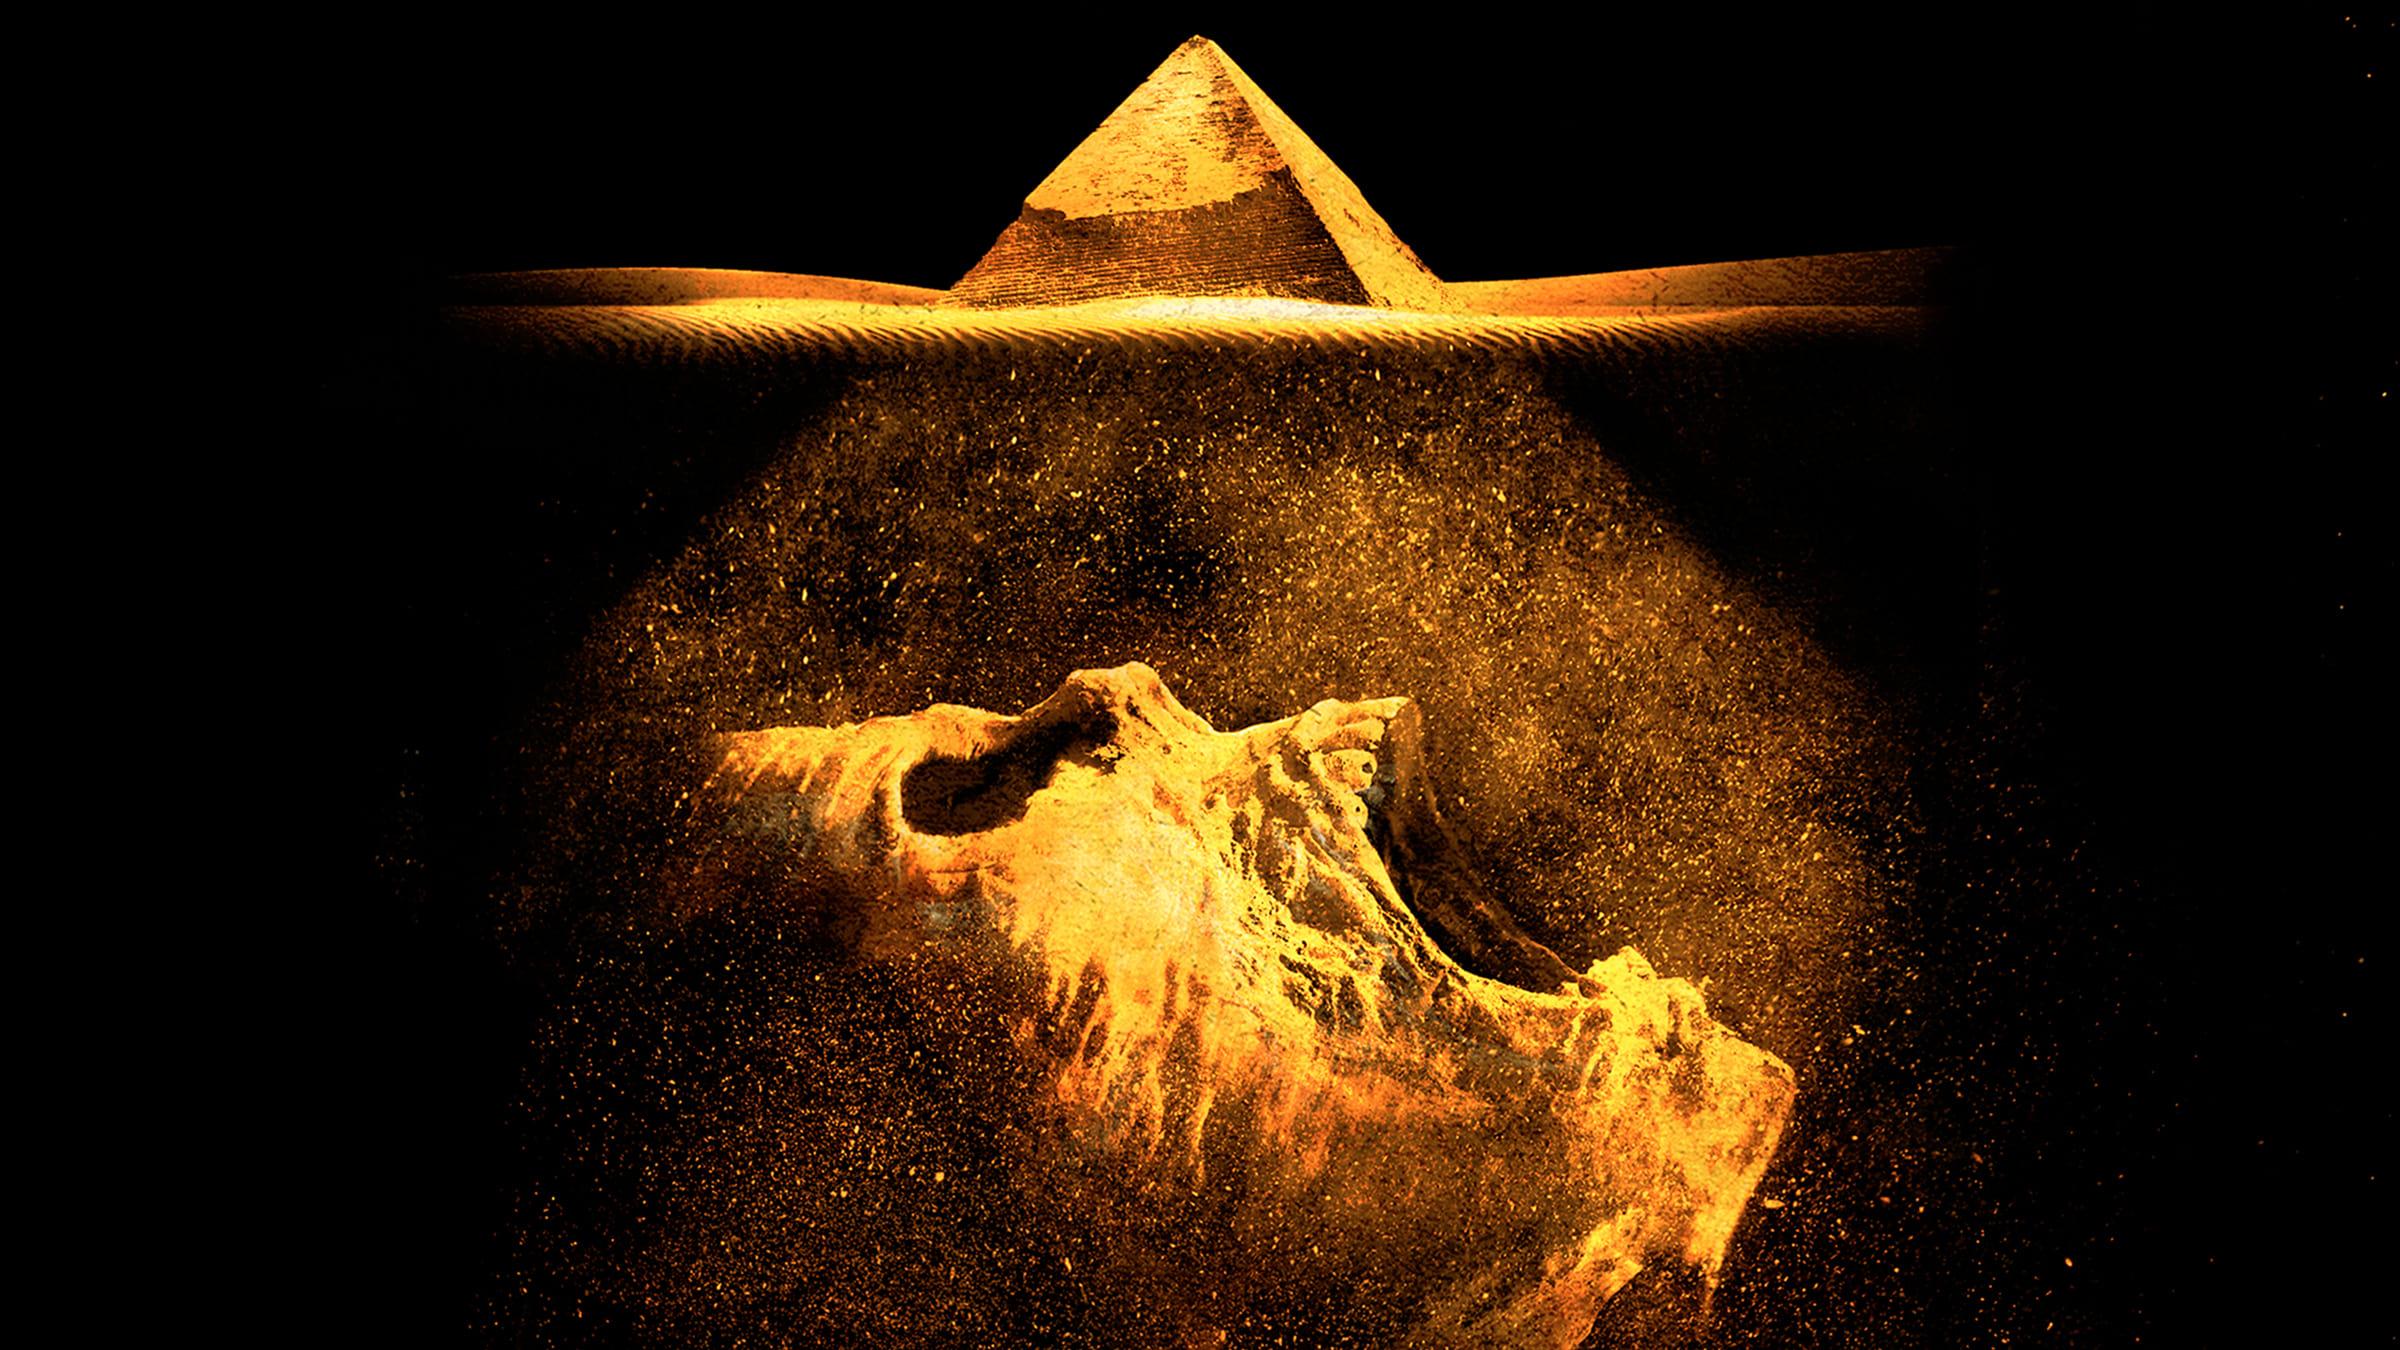 The Pyramid backdrop